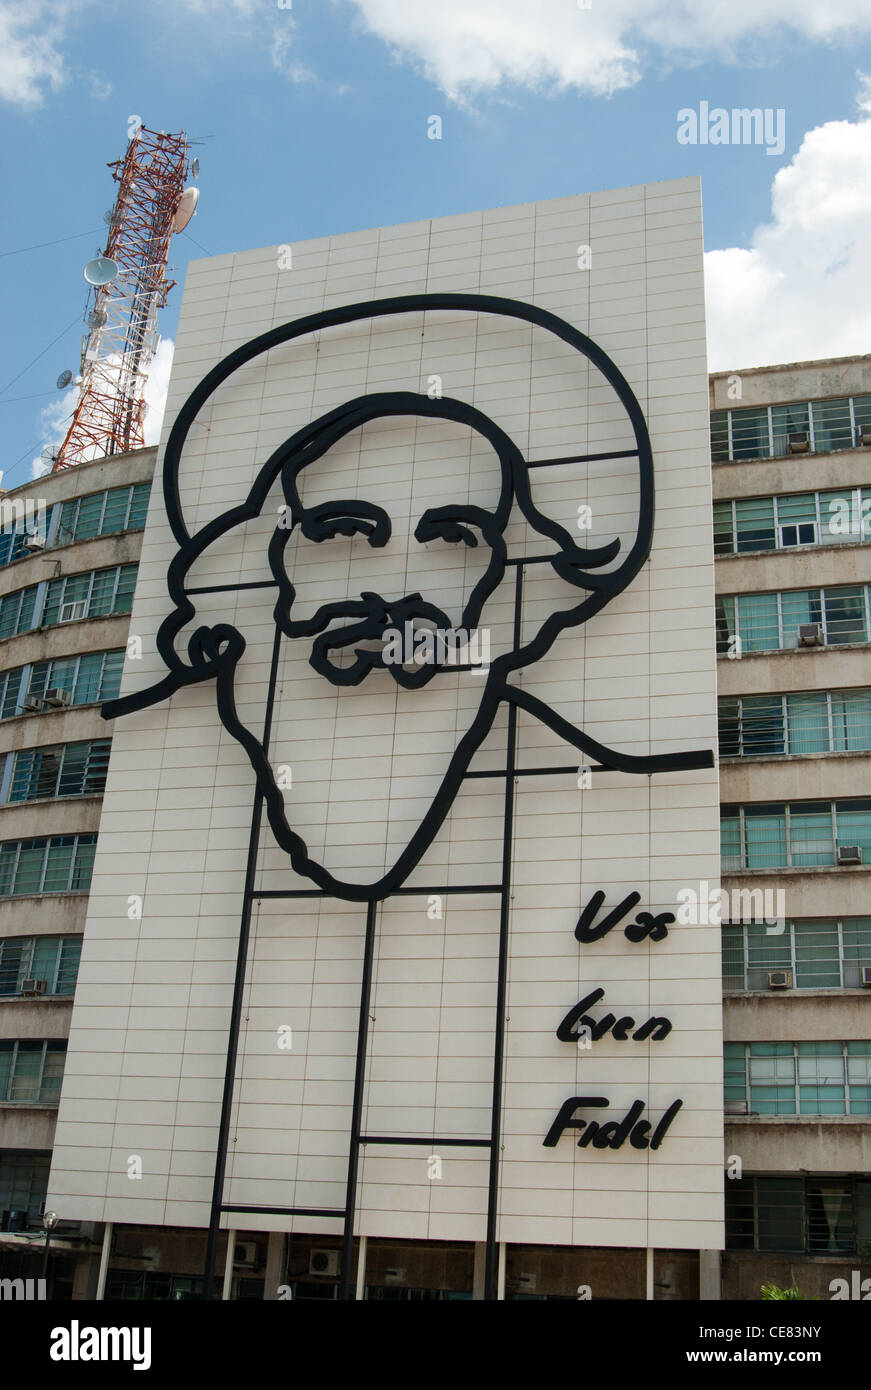 Fidel Castro sculpture in Revolution Square Havana Cuba Stock Photo